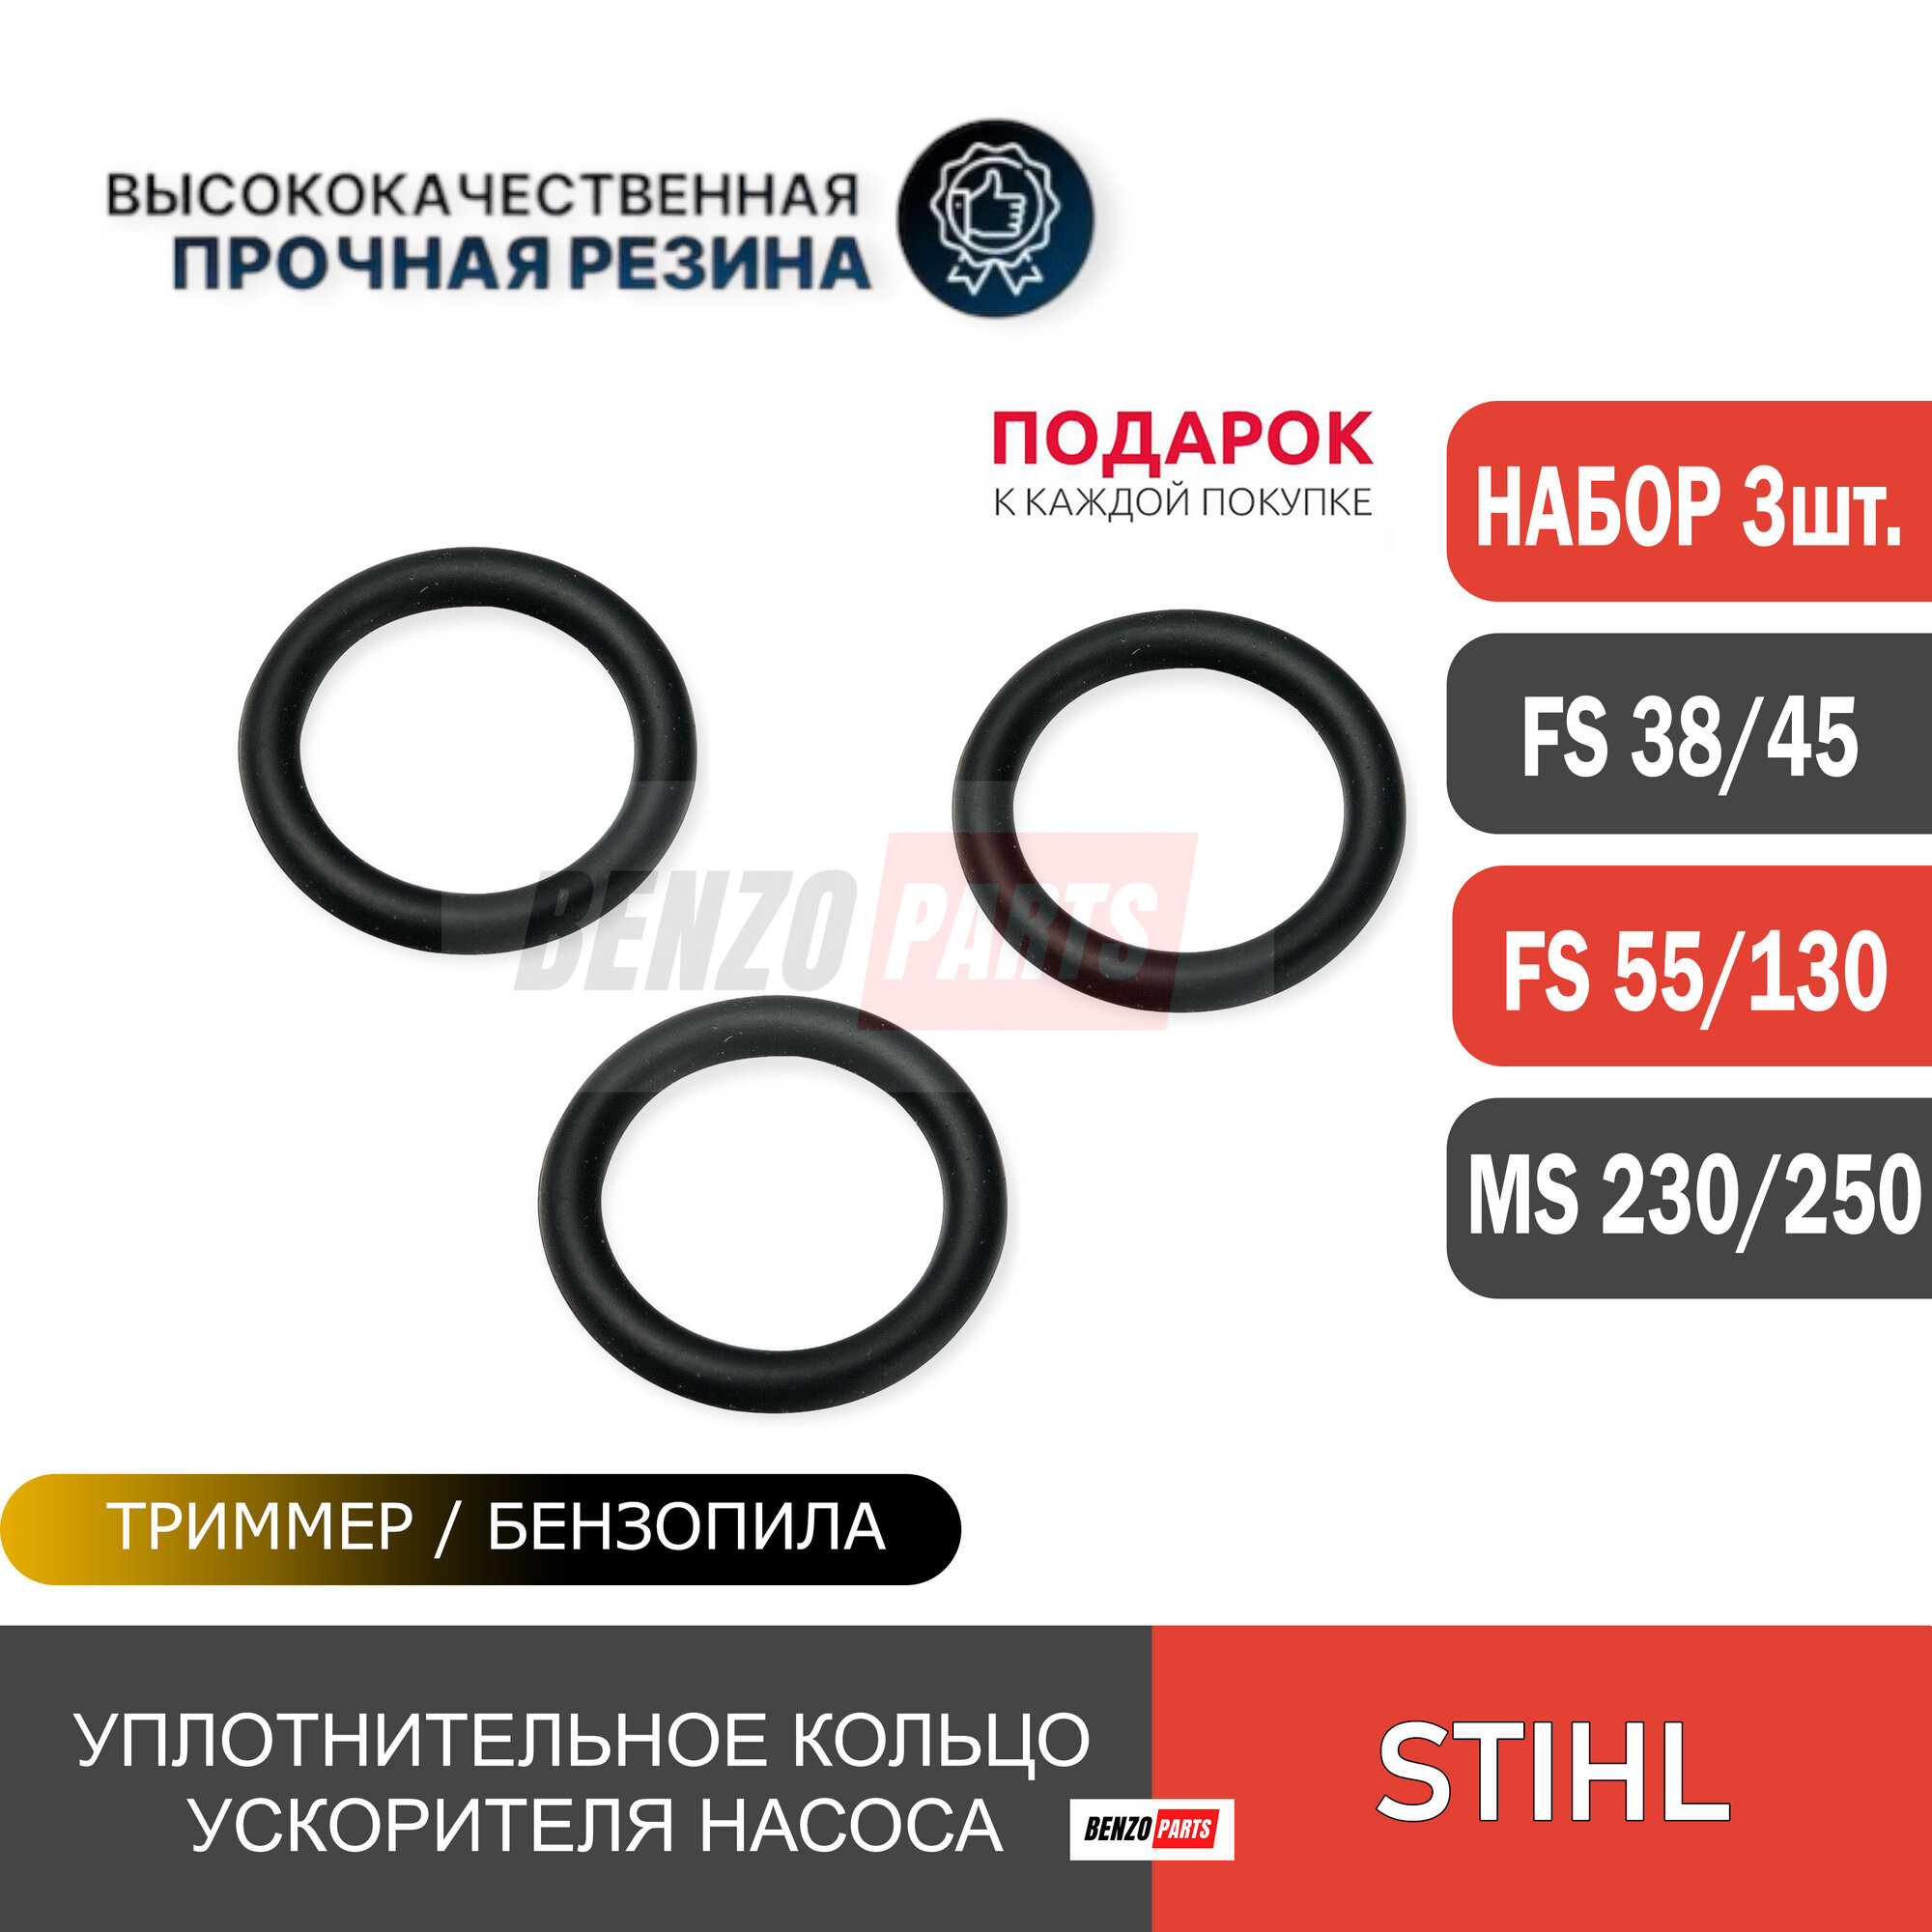 Уплотнительное кольцо 3шт. ускорительного насоса для мотокос Stihl FS 38/ FS 55/ FS 130 и бензопил Stihl MS 230/250. Каталожный номер 1132-122-3600